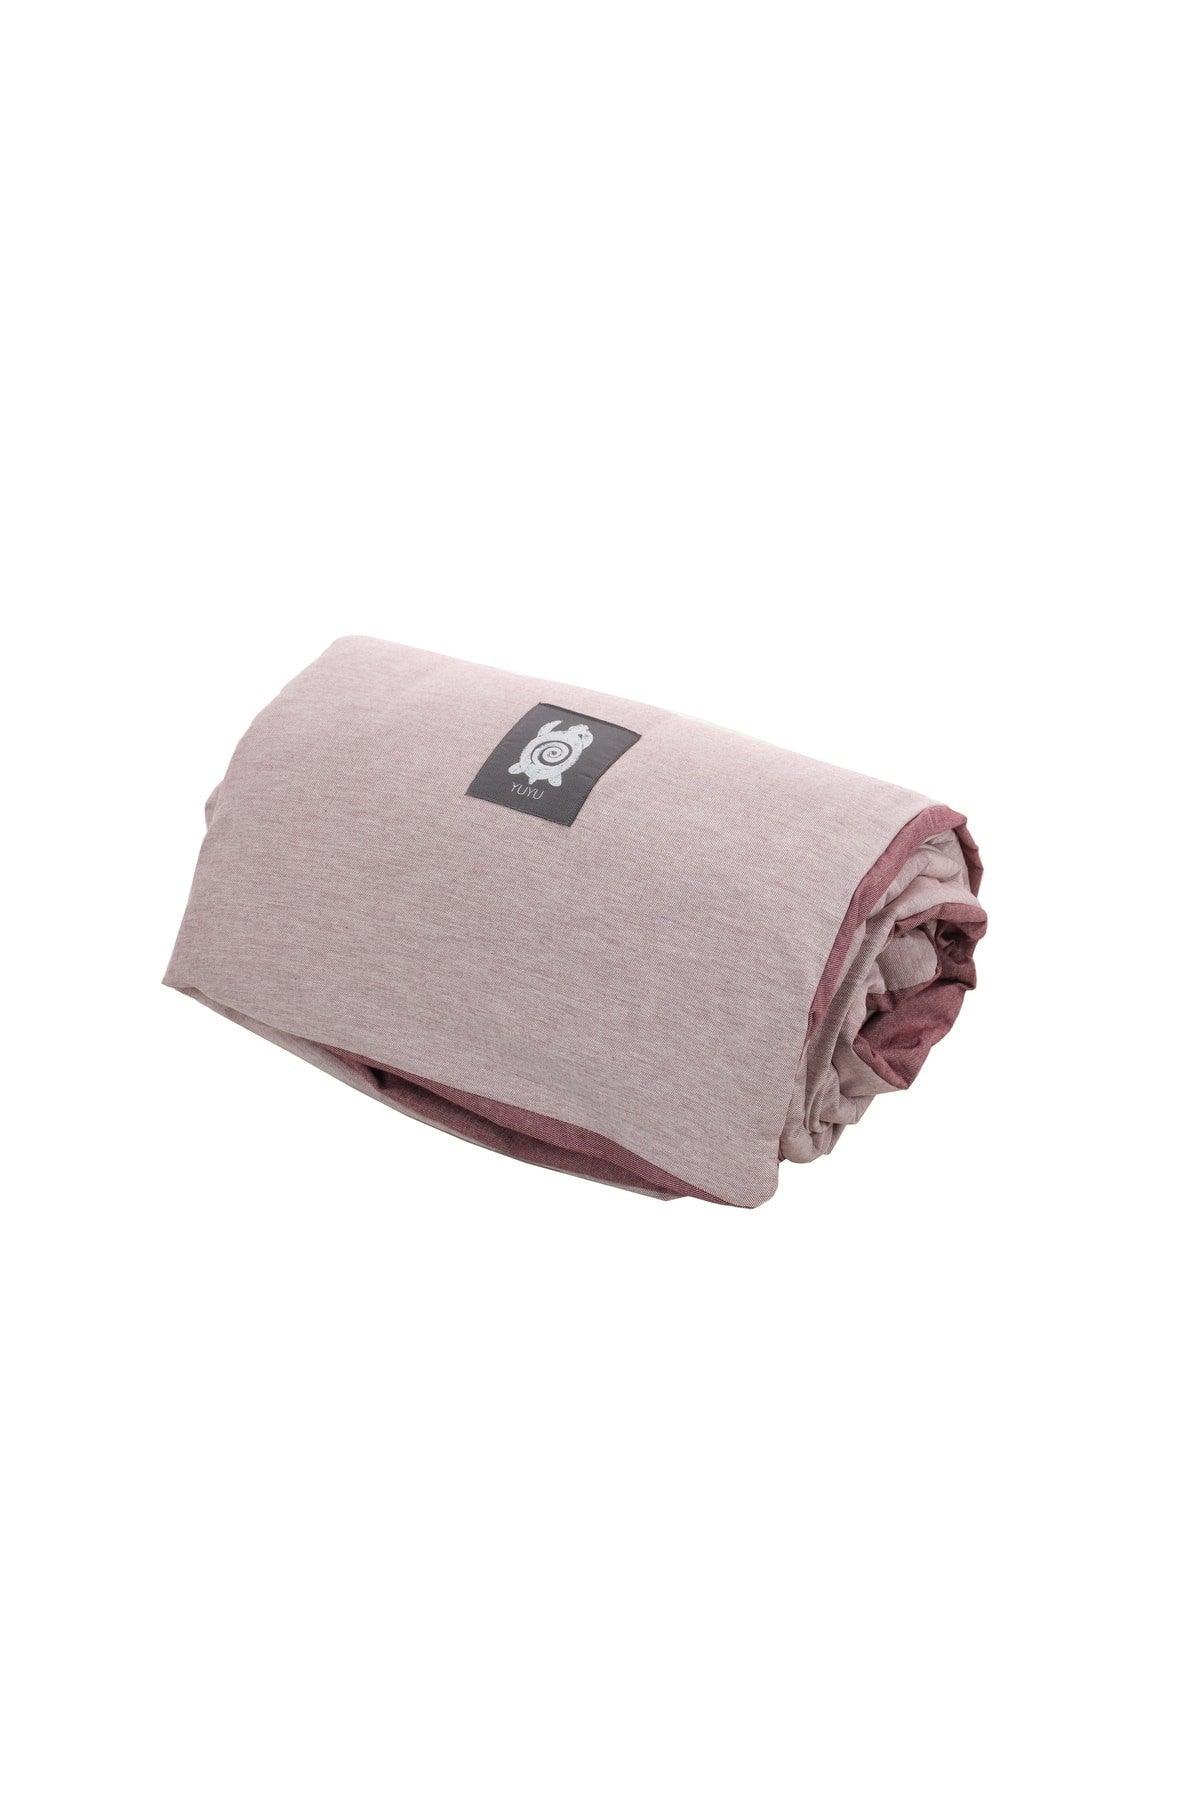 Med 6.7 Pink 4002 Single 135 X 200 Cm Covered Set Weighted Blanket Quilt - Swordslife